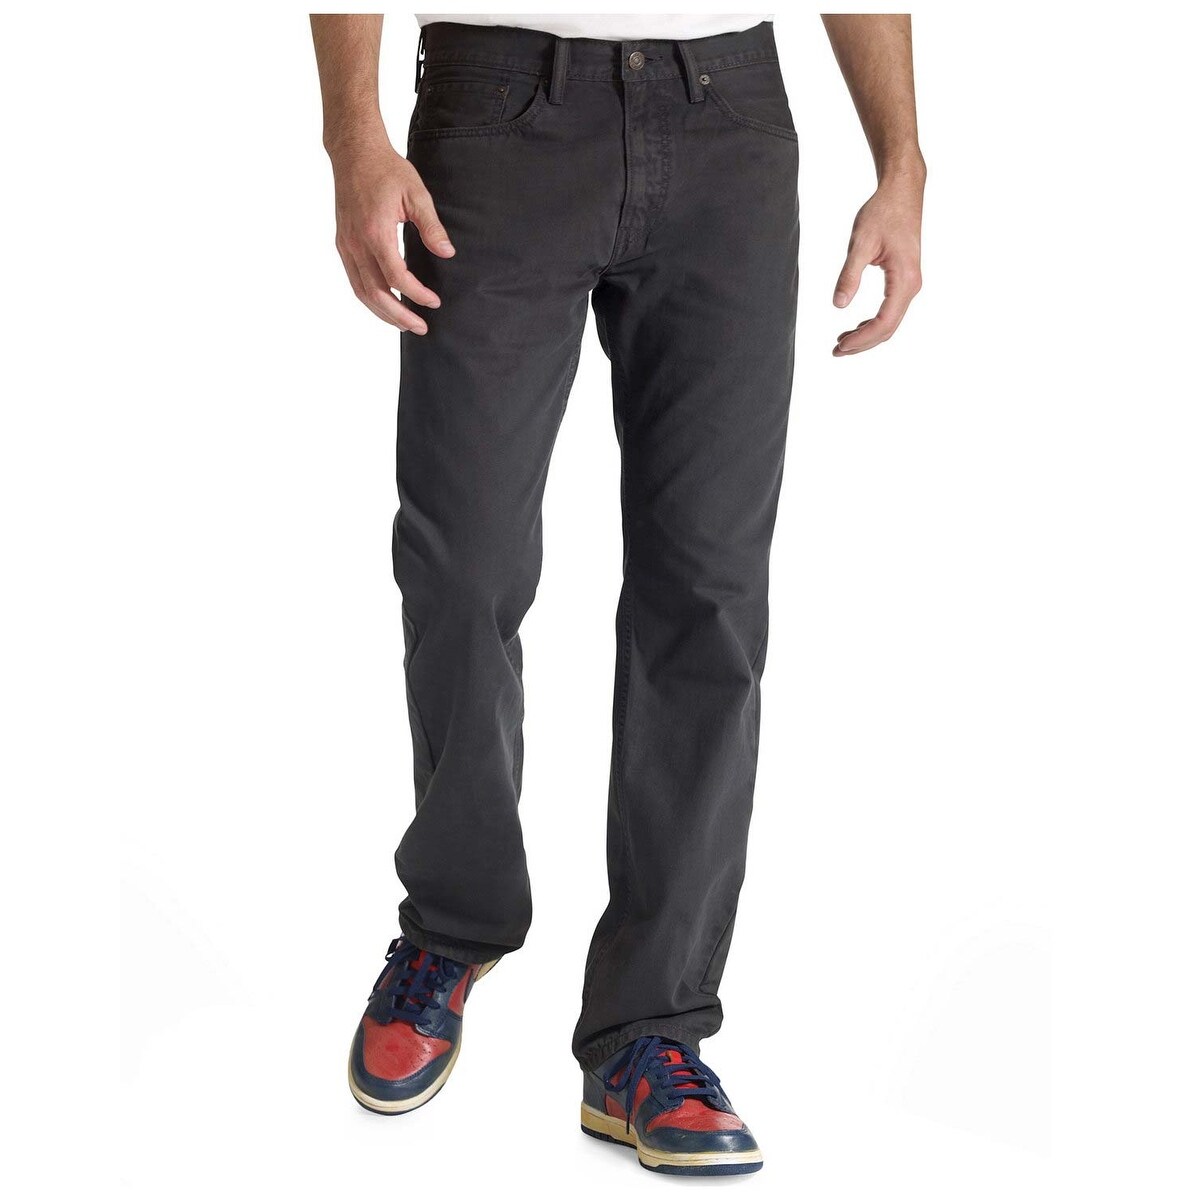 levis 505 grey jeans